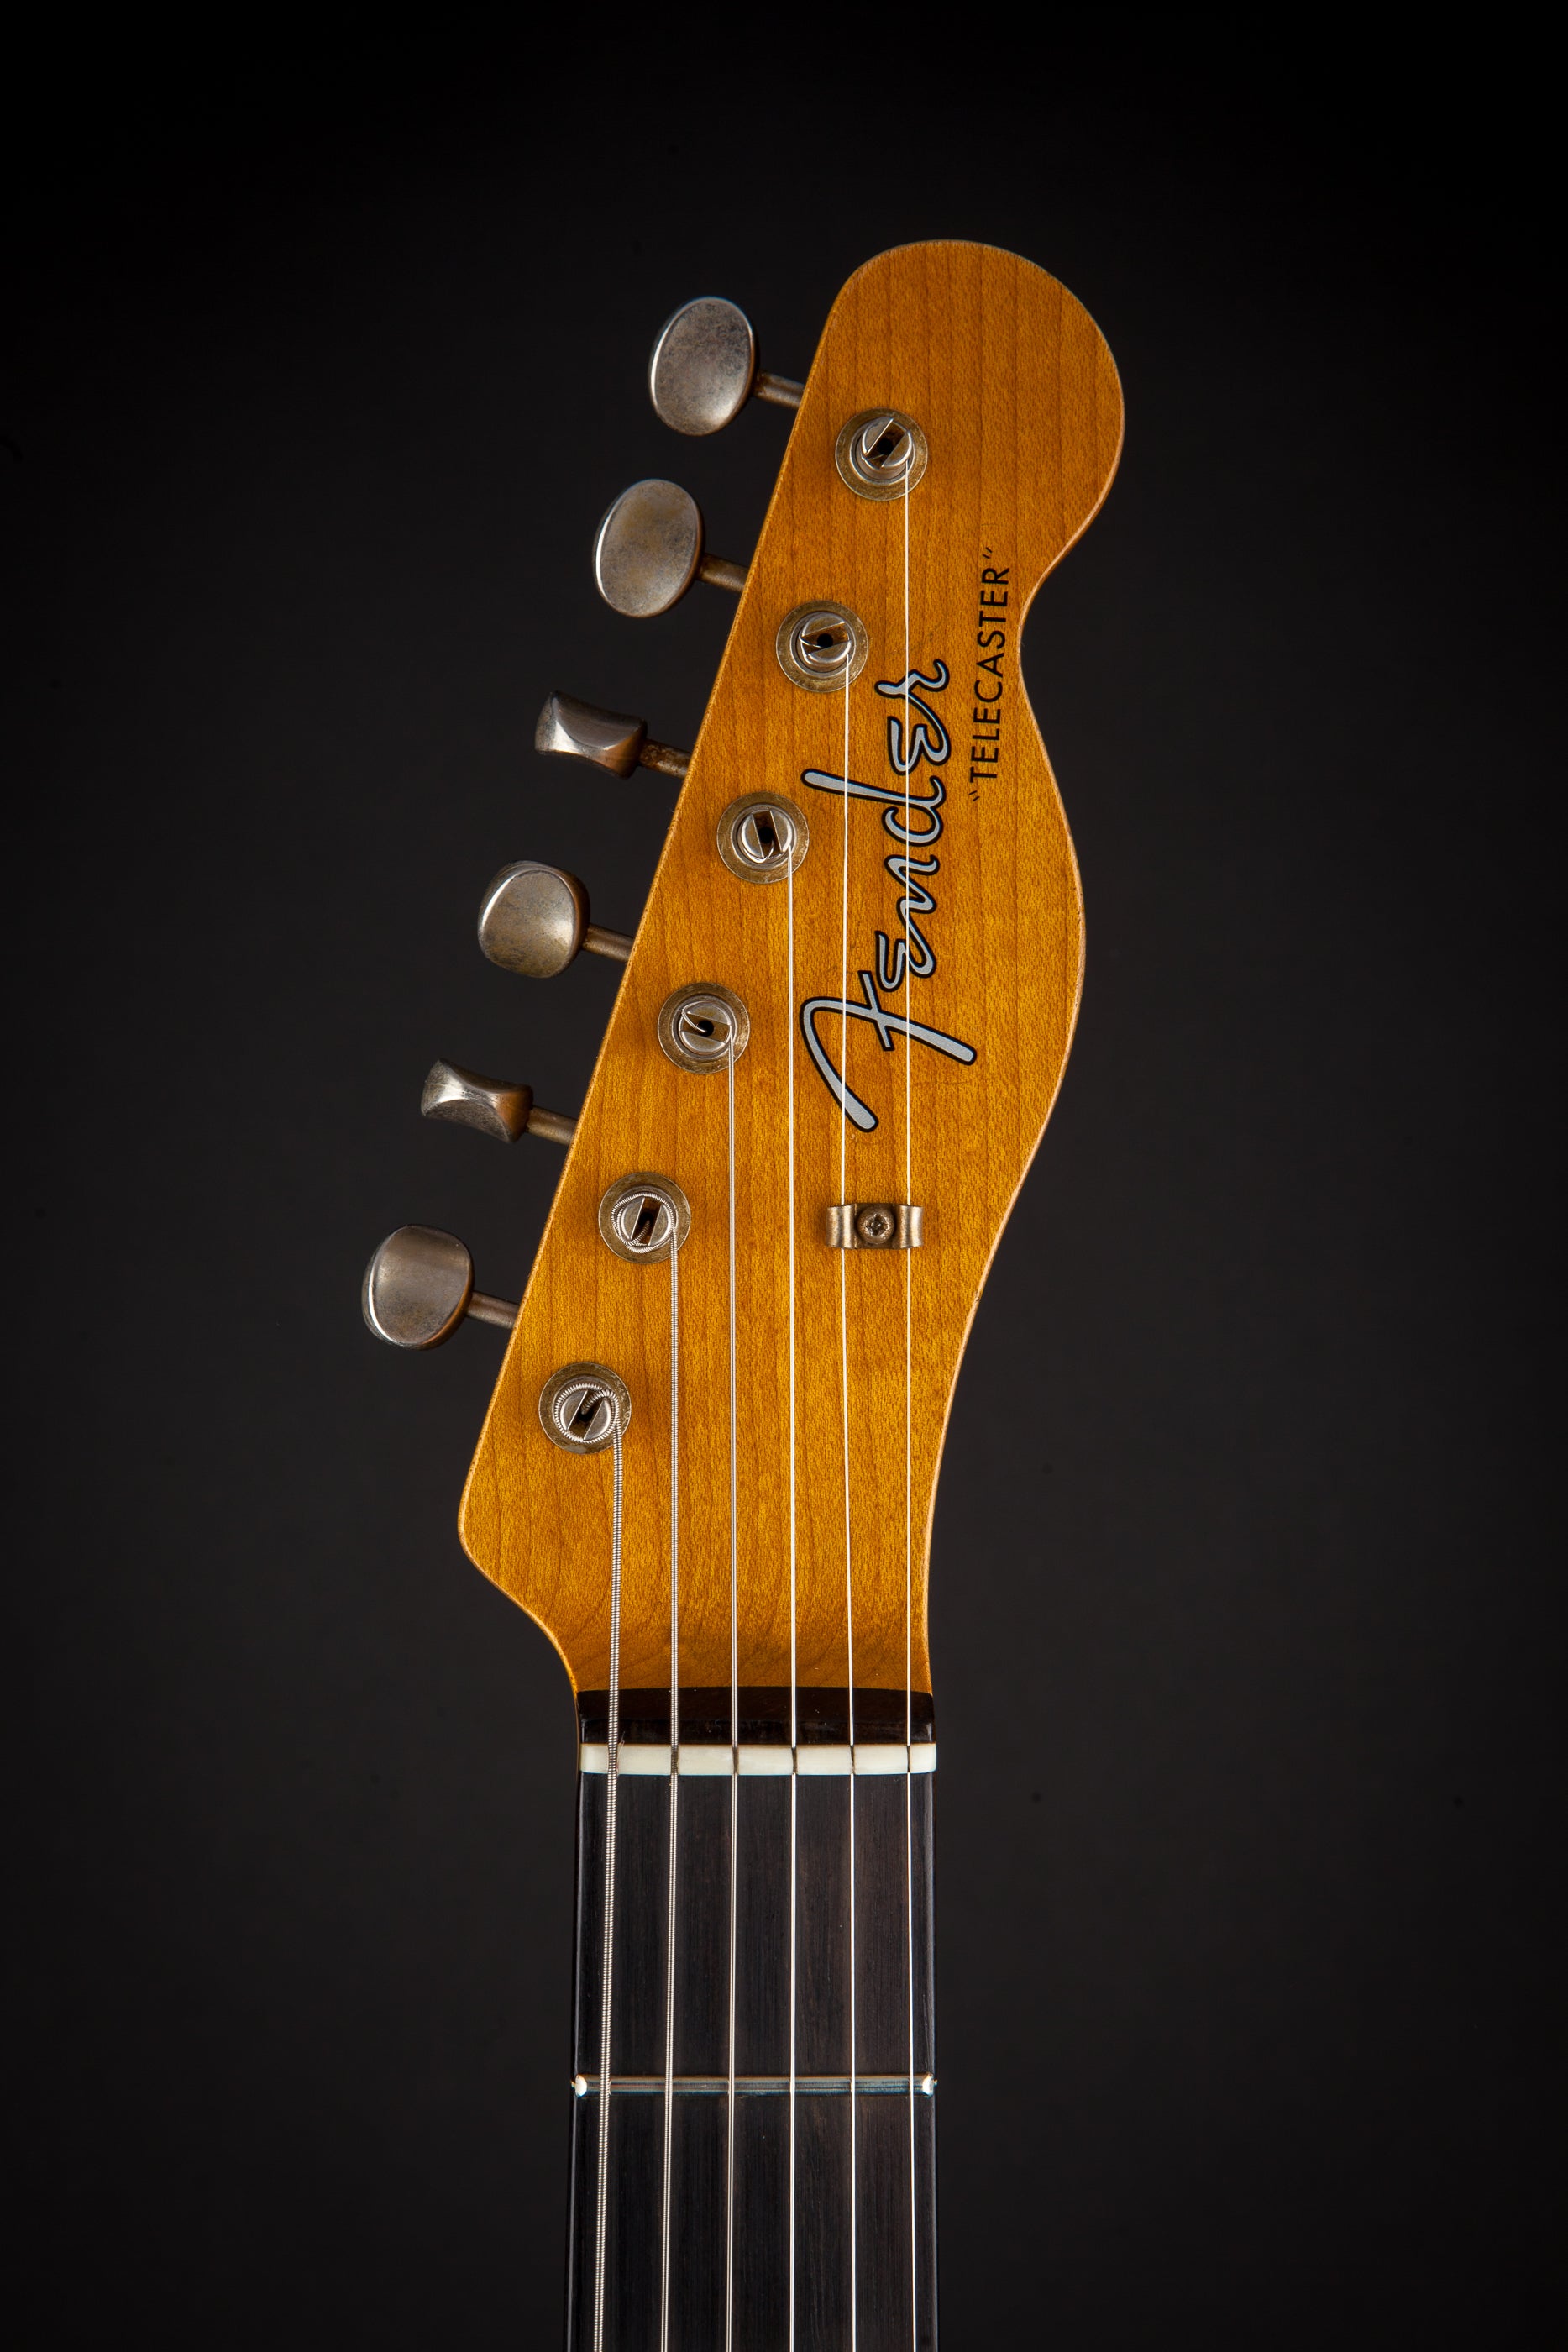 Fender Custom Shop: '56 Telecaster Relic Chocolate 3 Tone Sunburst #R113286